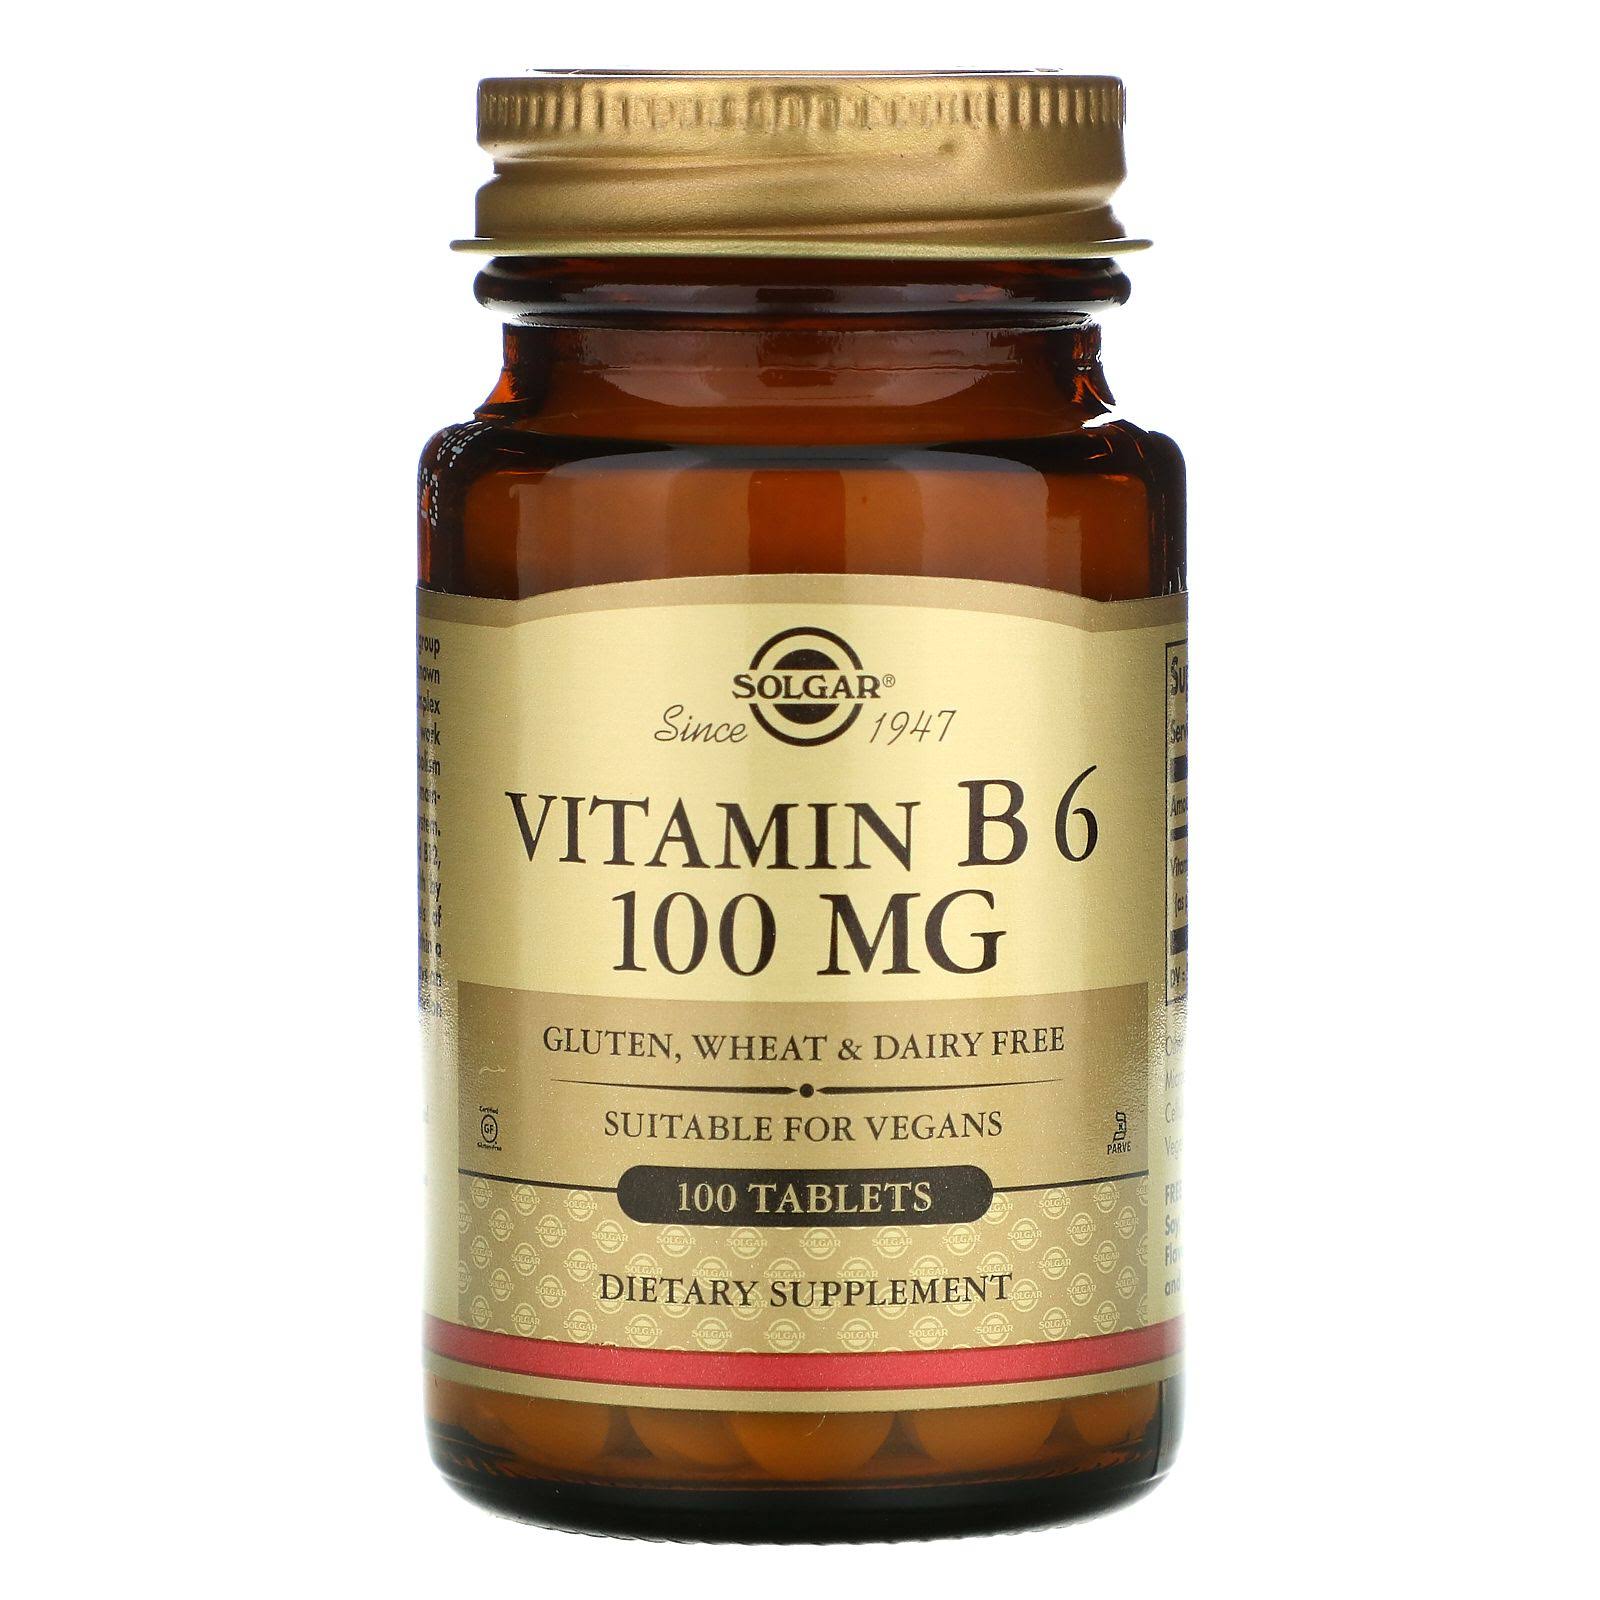 Solgar Vitamin B6 100mg Dietary Supplement - 100 Tablets